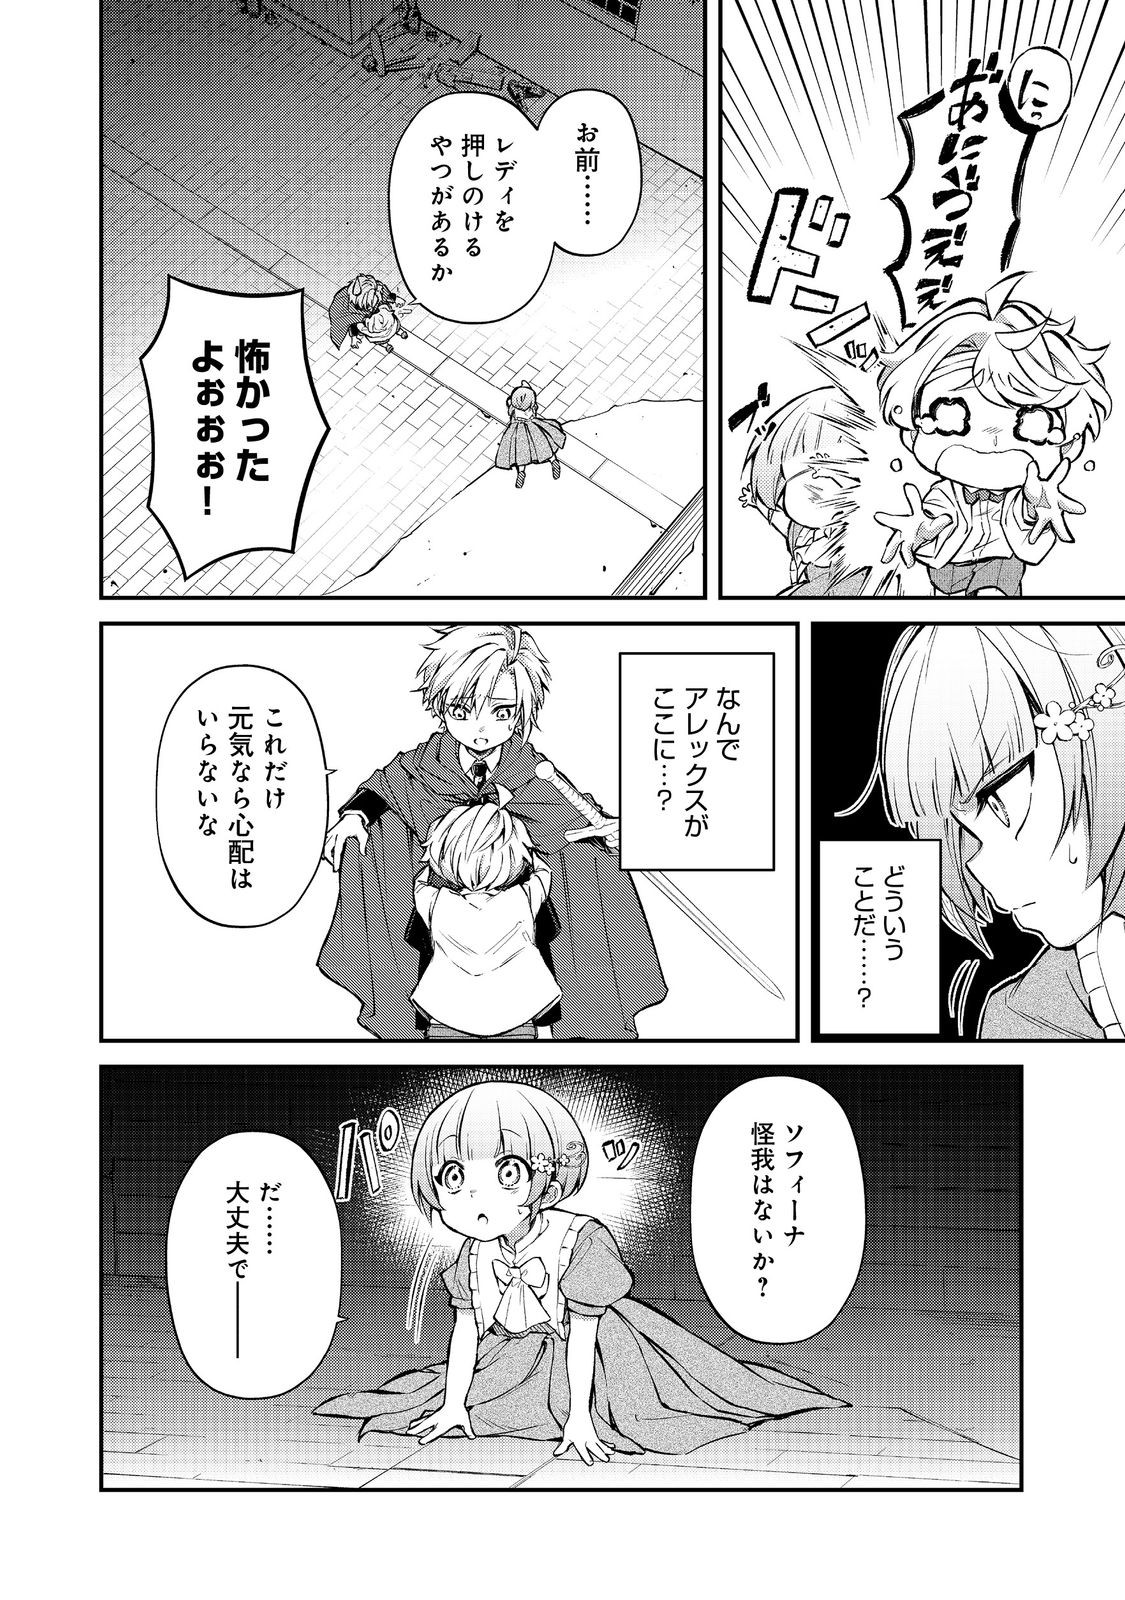 Saiai no Onee-sama ga Akuyaku Reijou datta no de, Kami ga Sadameta Scenario ni Aragaimasu - Chapter 15 - Page 2